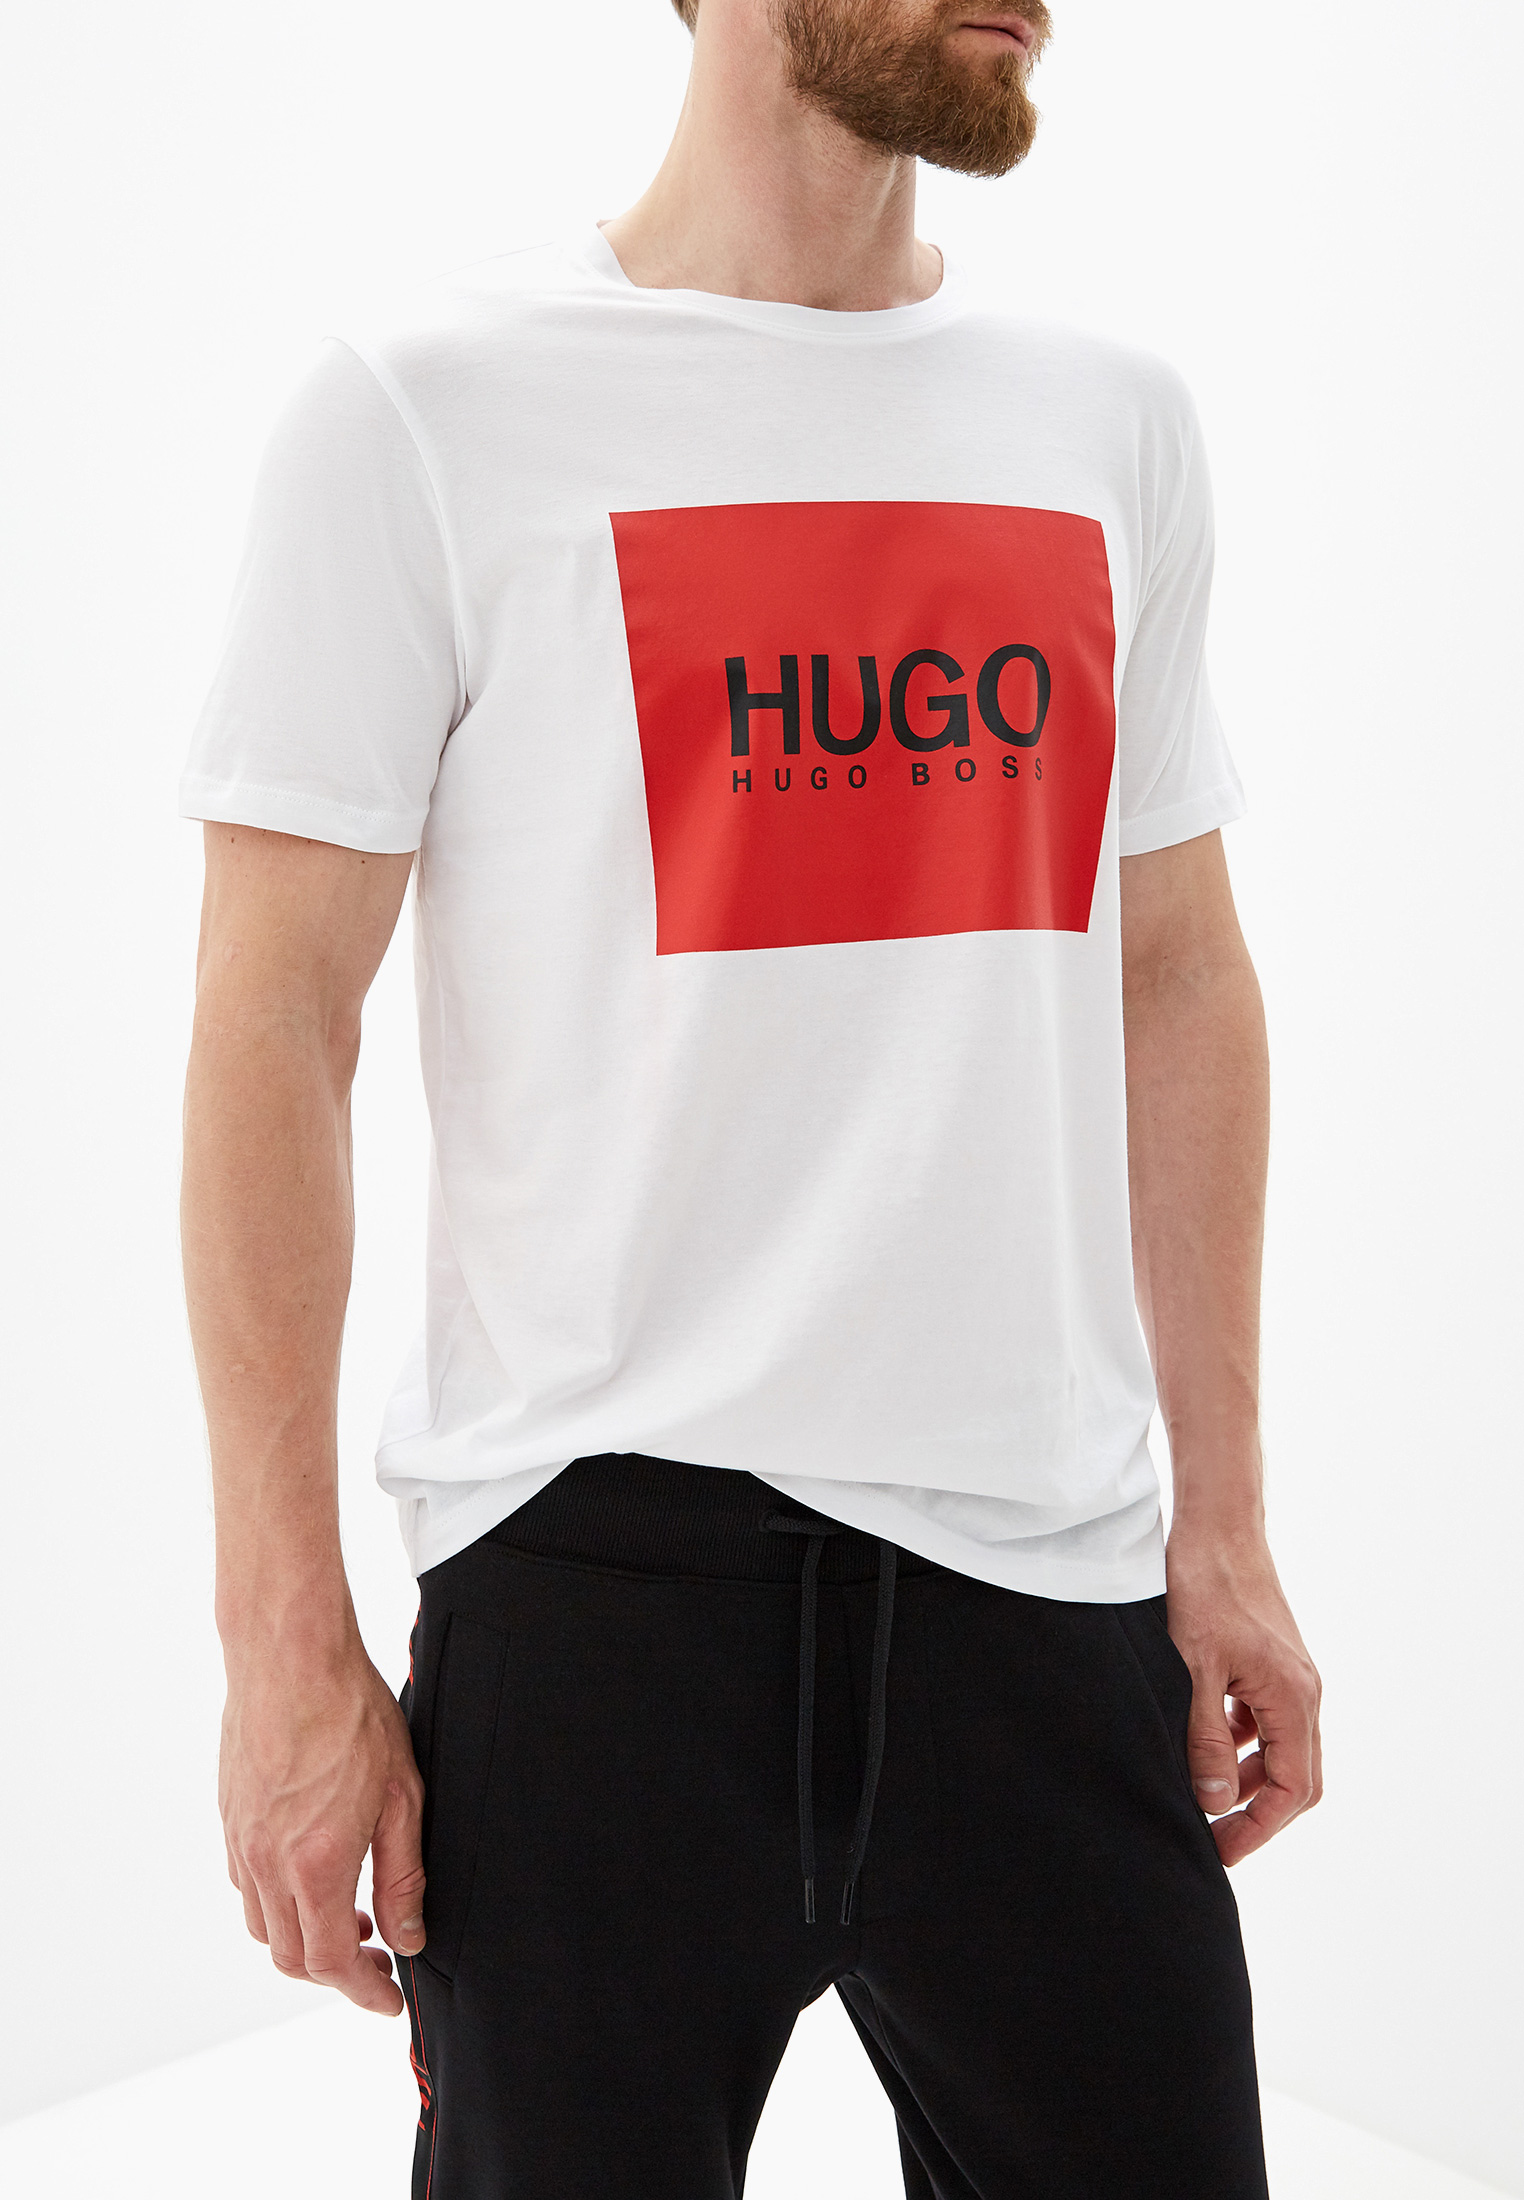 Купить футболку hugo. Hugo Boss белая майка Hugo. Футболка Хуго босс мужские. Футболка Boss Hugo Boss. Футболка Хьюго Хьюго босс белая.